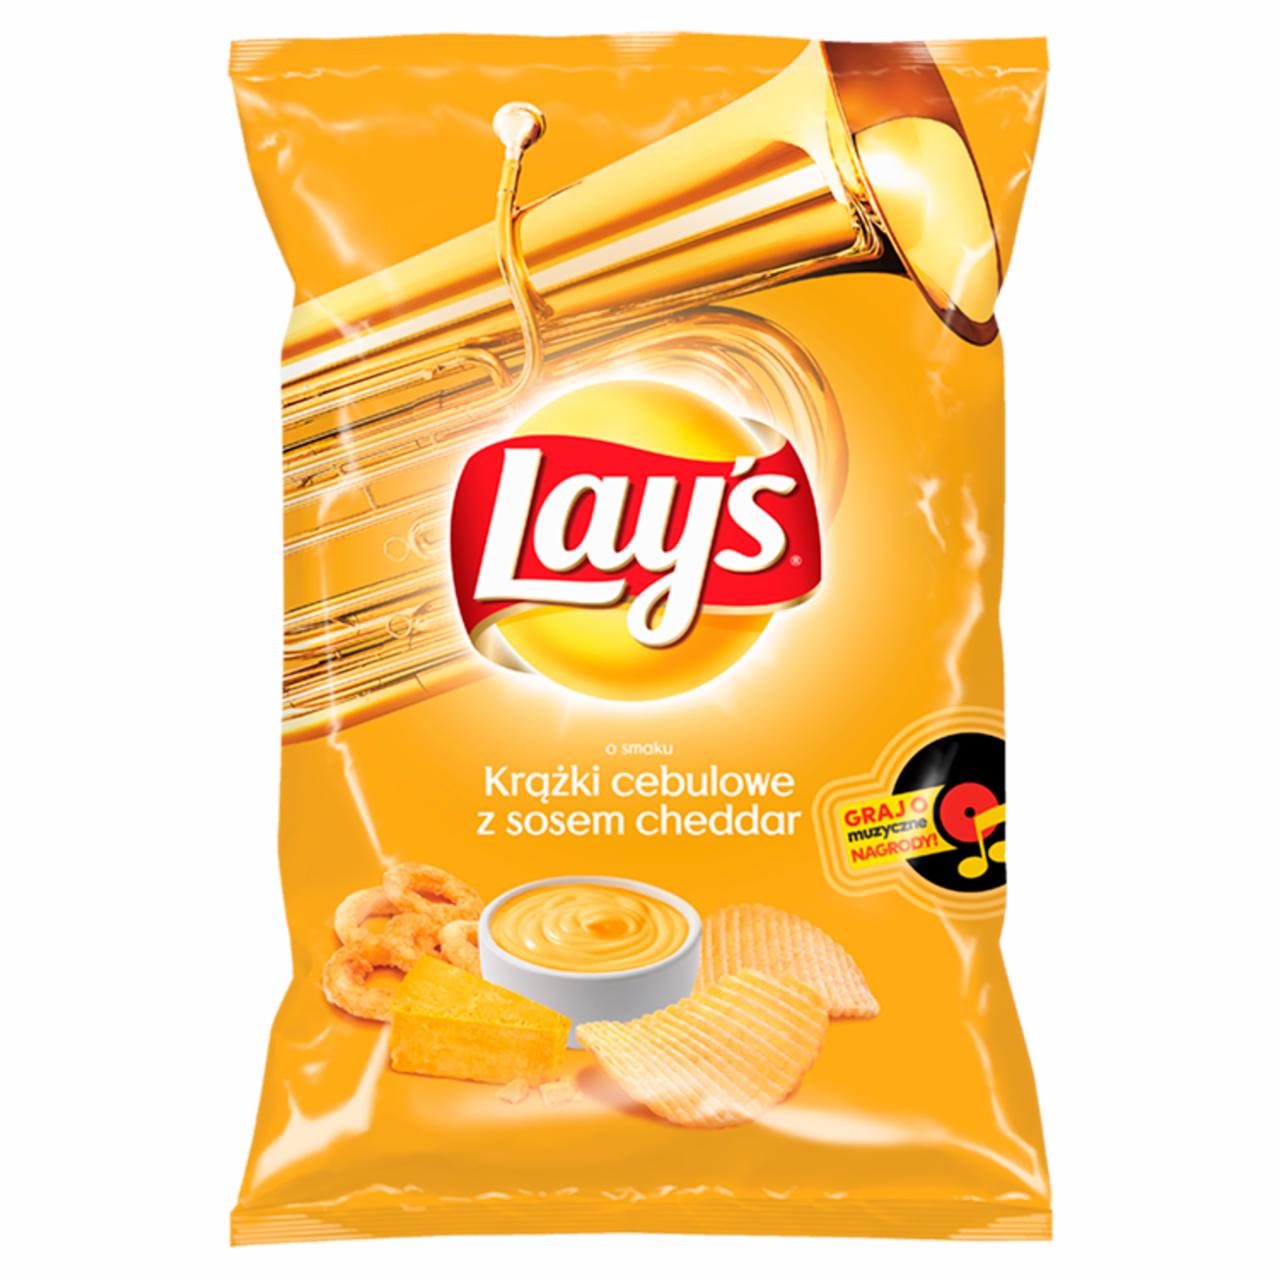 Zdjęcia - Lay's Chipsy ziemniaczane karbowane o smaku krążków cebulowych z sosem cheddar 130 g